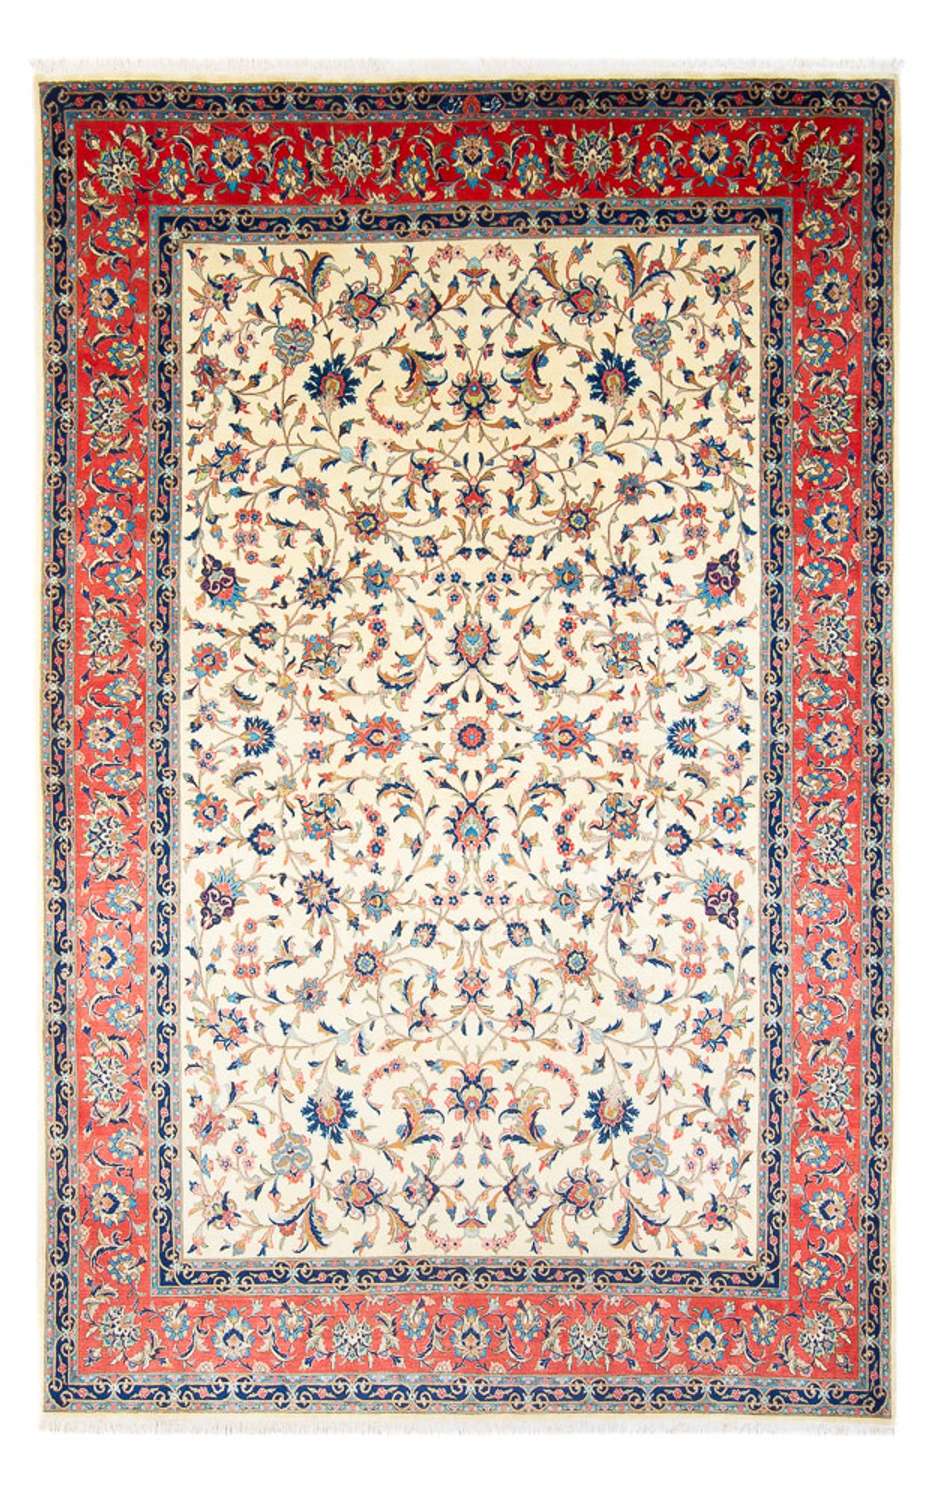 Tapis persan - Classique - 340 x 225 cm - crème